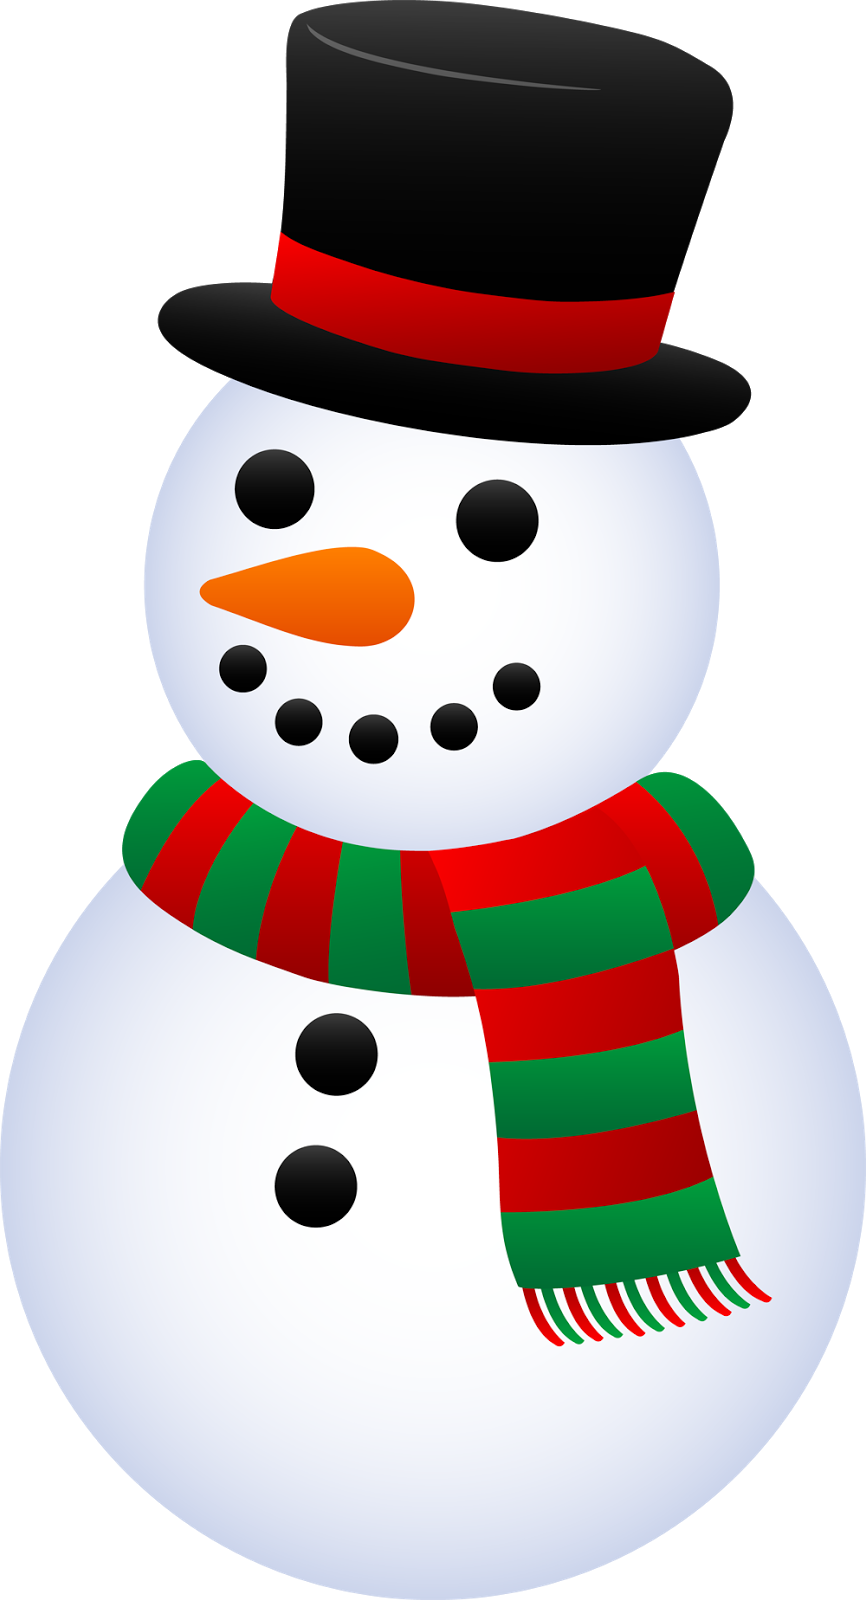 Imágenes Gratis: 35 postales de muñecos de nieve para Navidad - Snowman